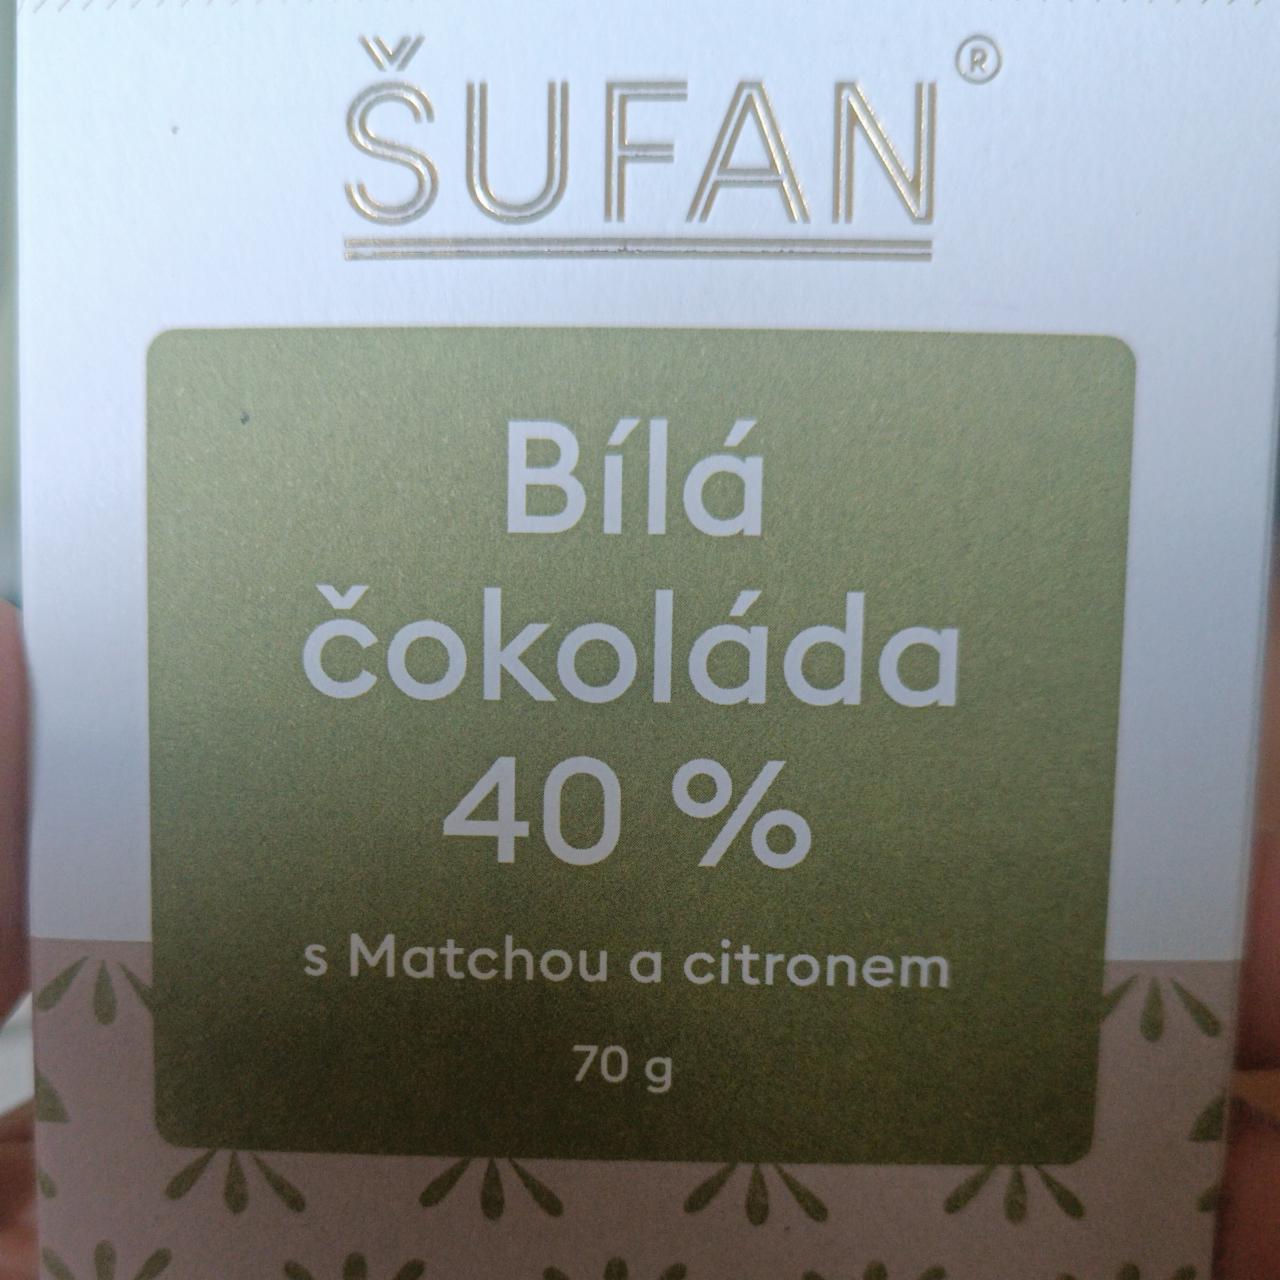 Fotografie - Bílá čokoláda 40% s matchou a citronem Šufan